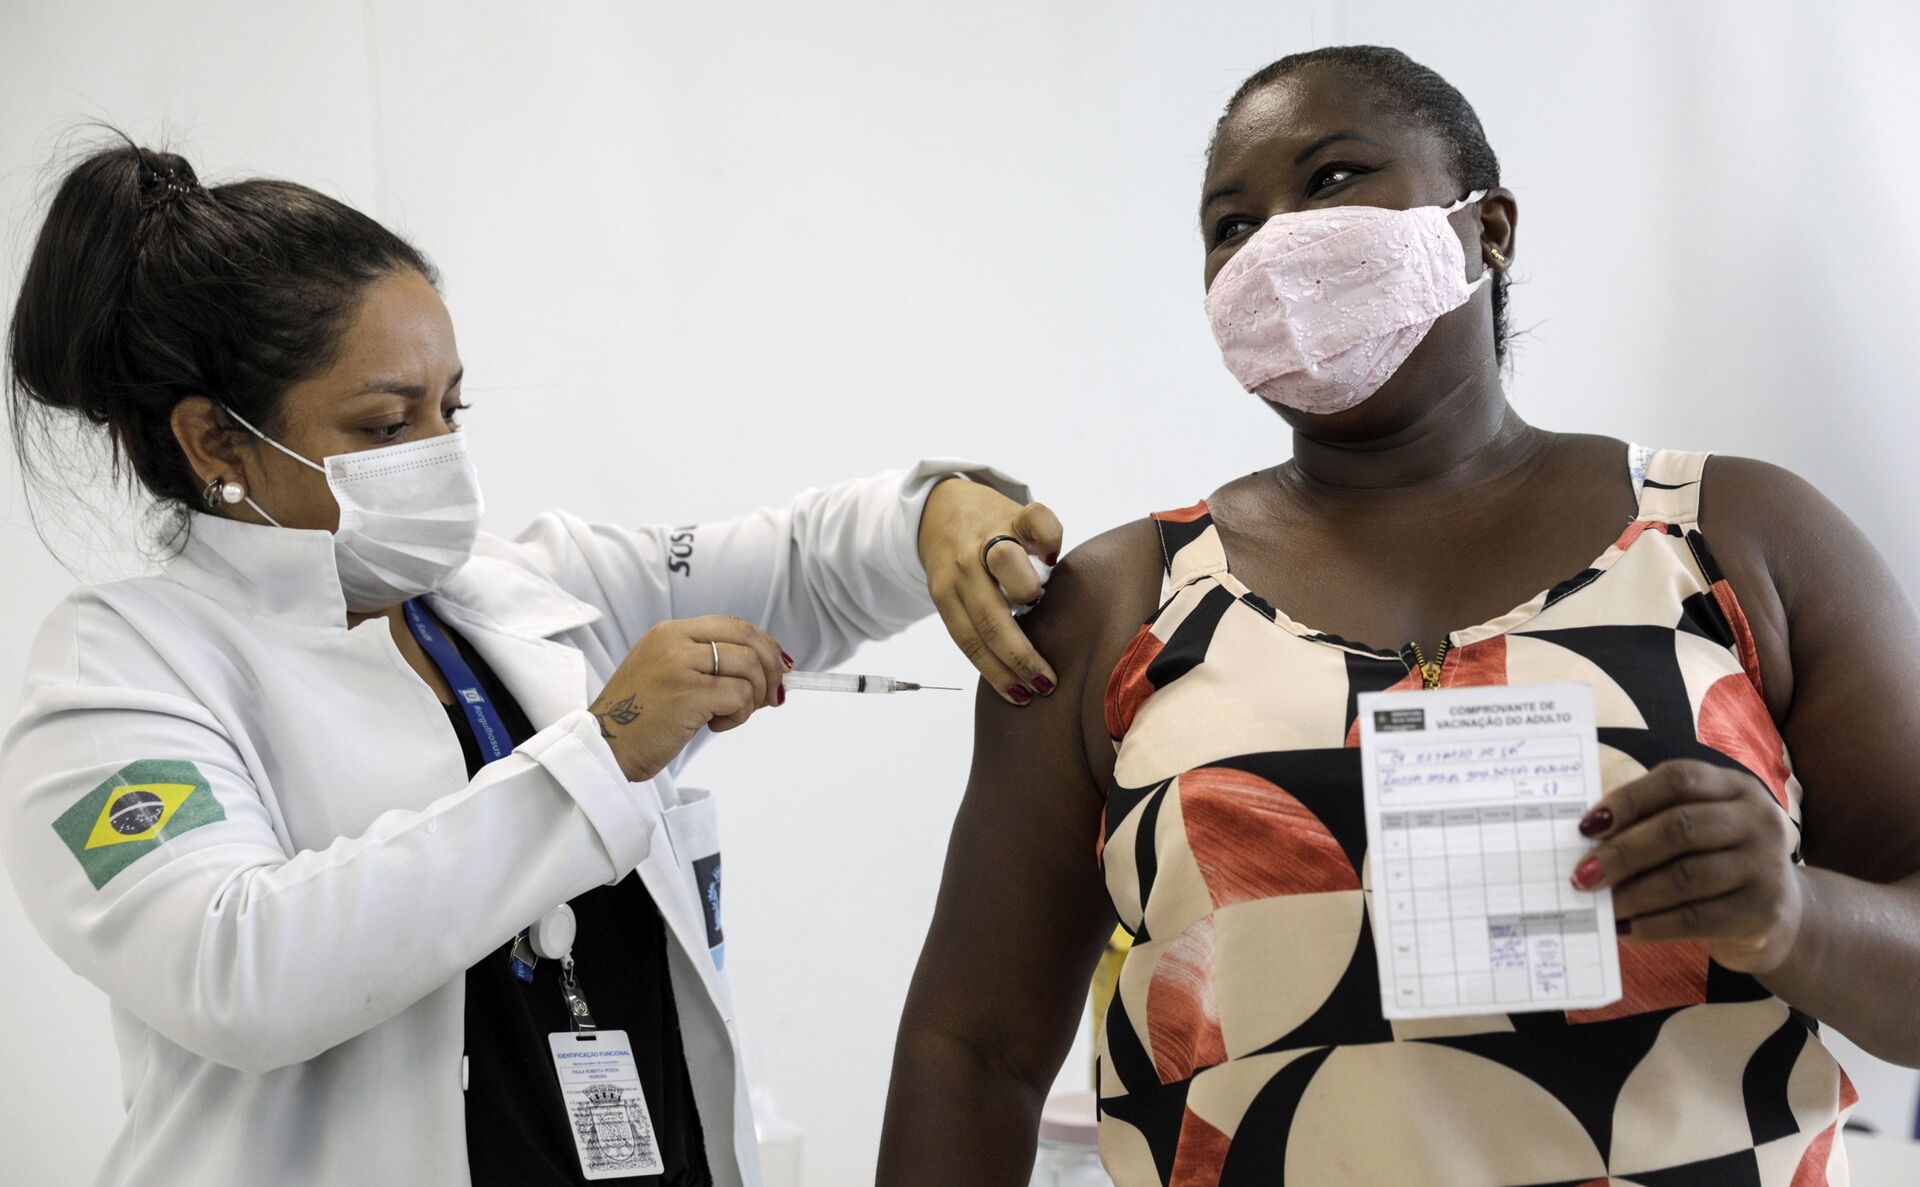 'Incompetência do governo' é o maior entrave da vacinação no Brasil, dizem profissionais de saúde - Sputnik Brasil, 1920, 17.02.2021